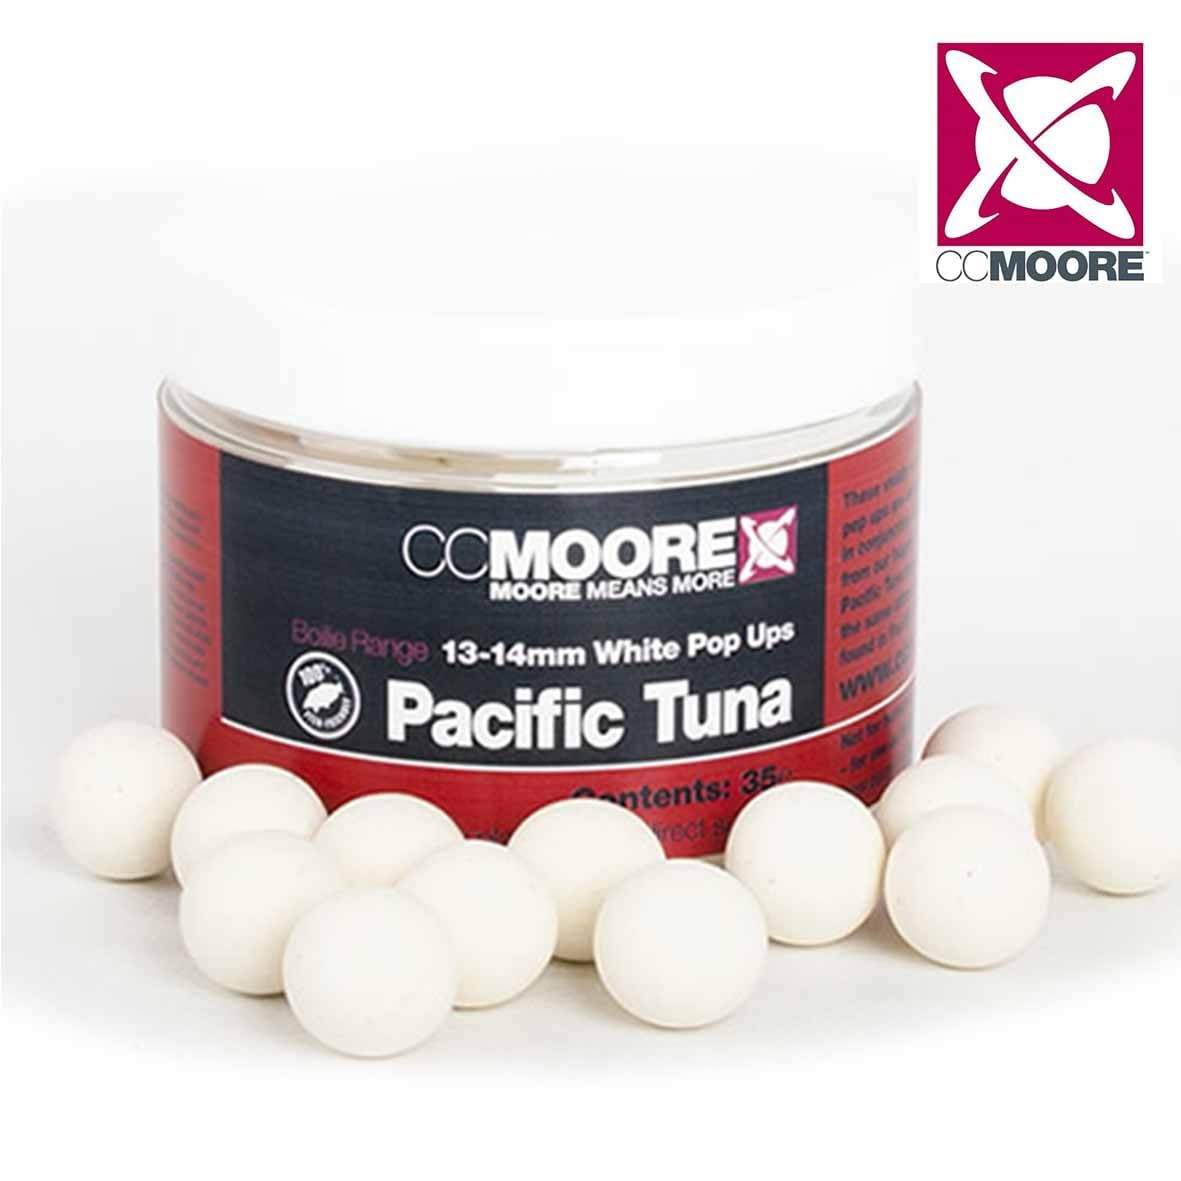 CC Moore Pop Up Pacific Tuna 13-14mm 35ks Biela